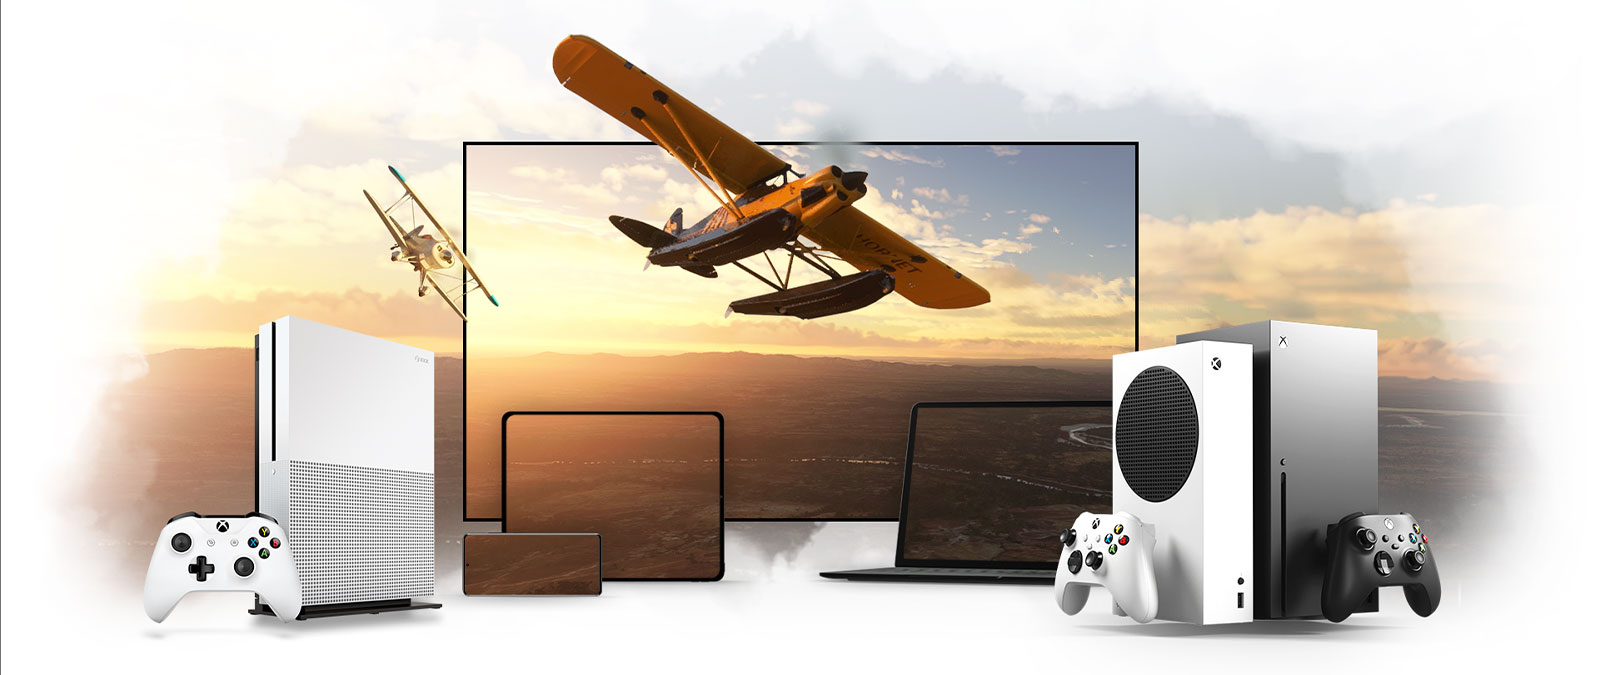 Alcuni dispositivi allineati, fra cui un televisore, una console Xbox One e una Xbox Series X, Un aereo a elica vola via da un orizzonte illuminato dal sole.